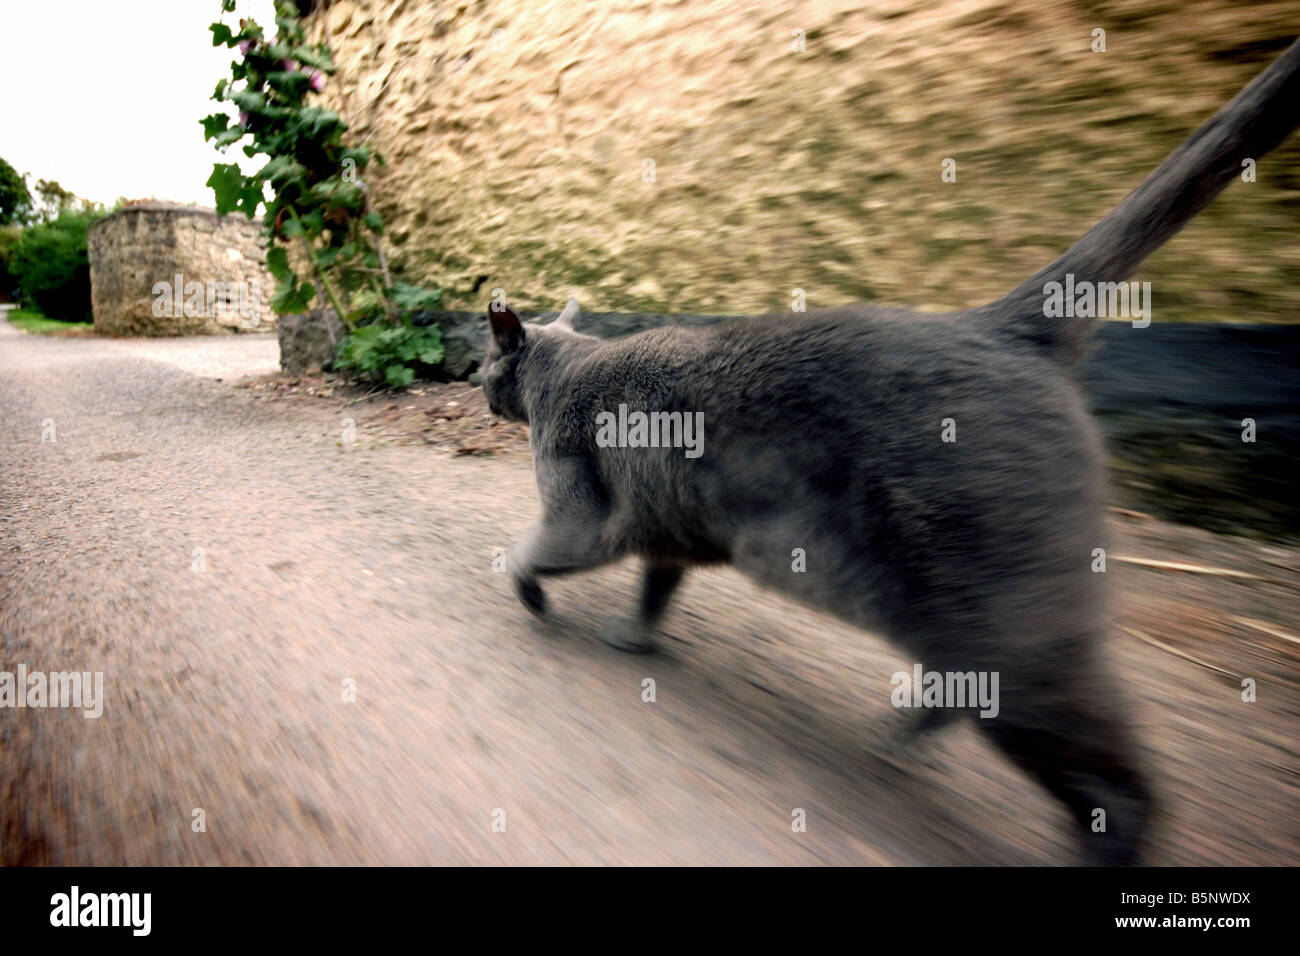 Cat walking through village Stock Photo